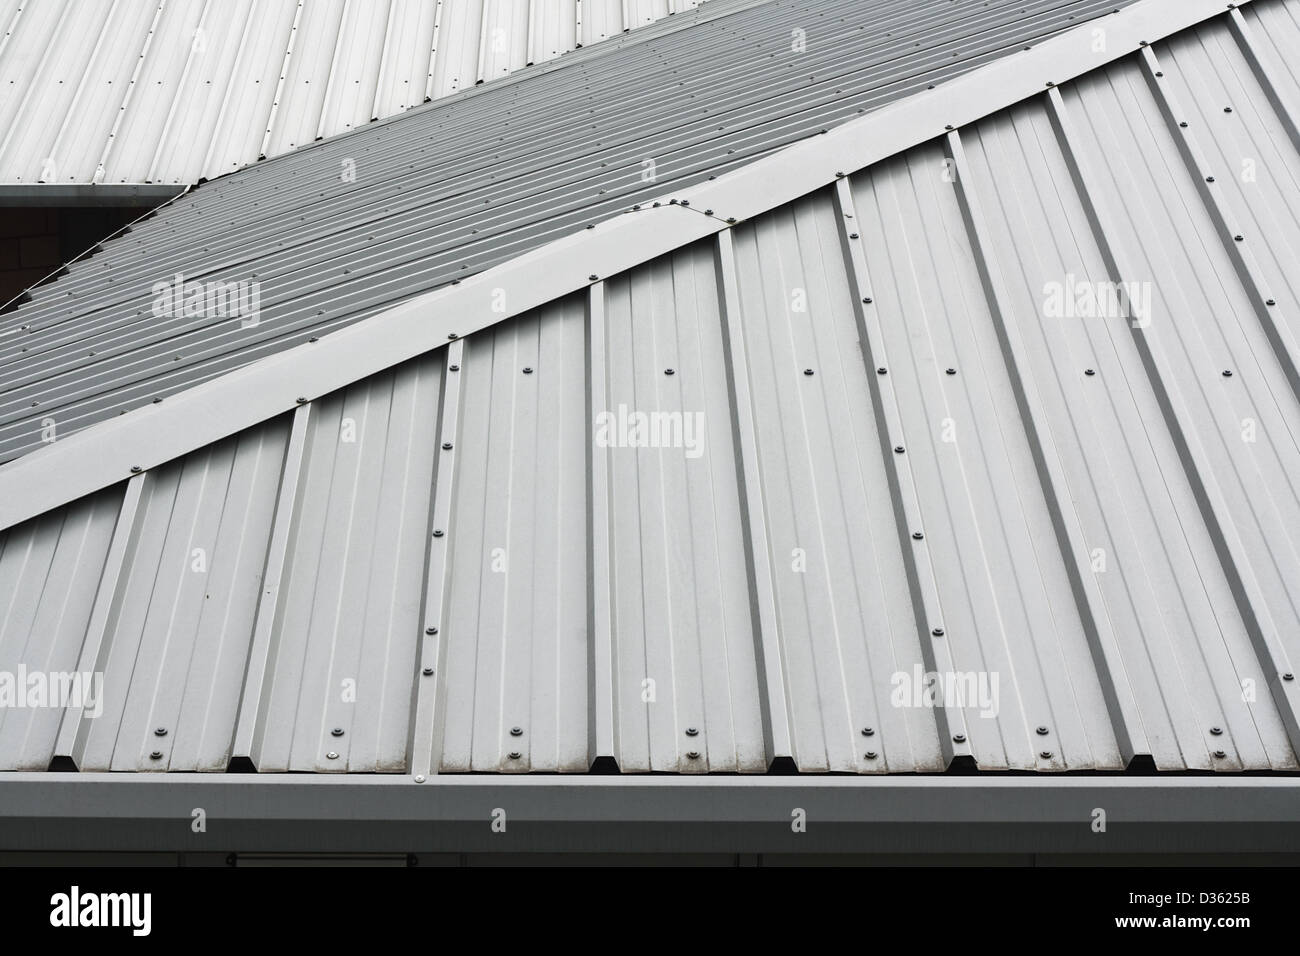 Détail architectural metal roofing sur commercial Construction de bâtiment moderne Banque D'Images